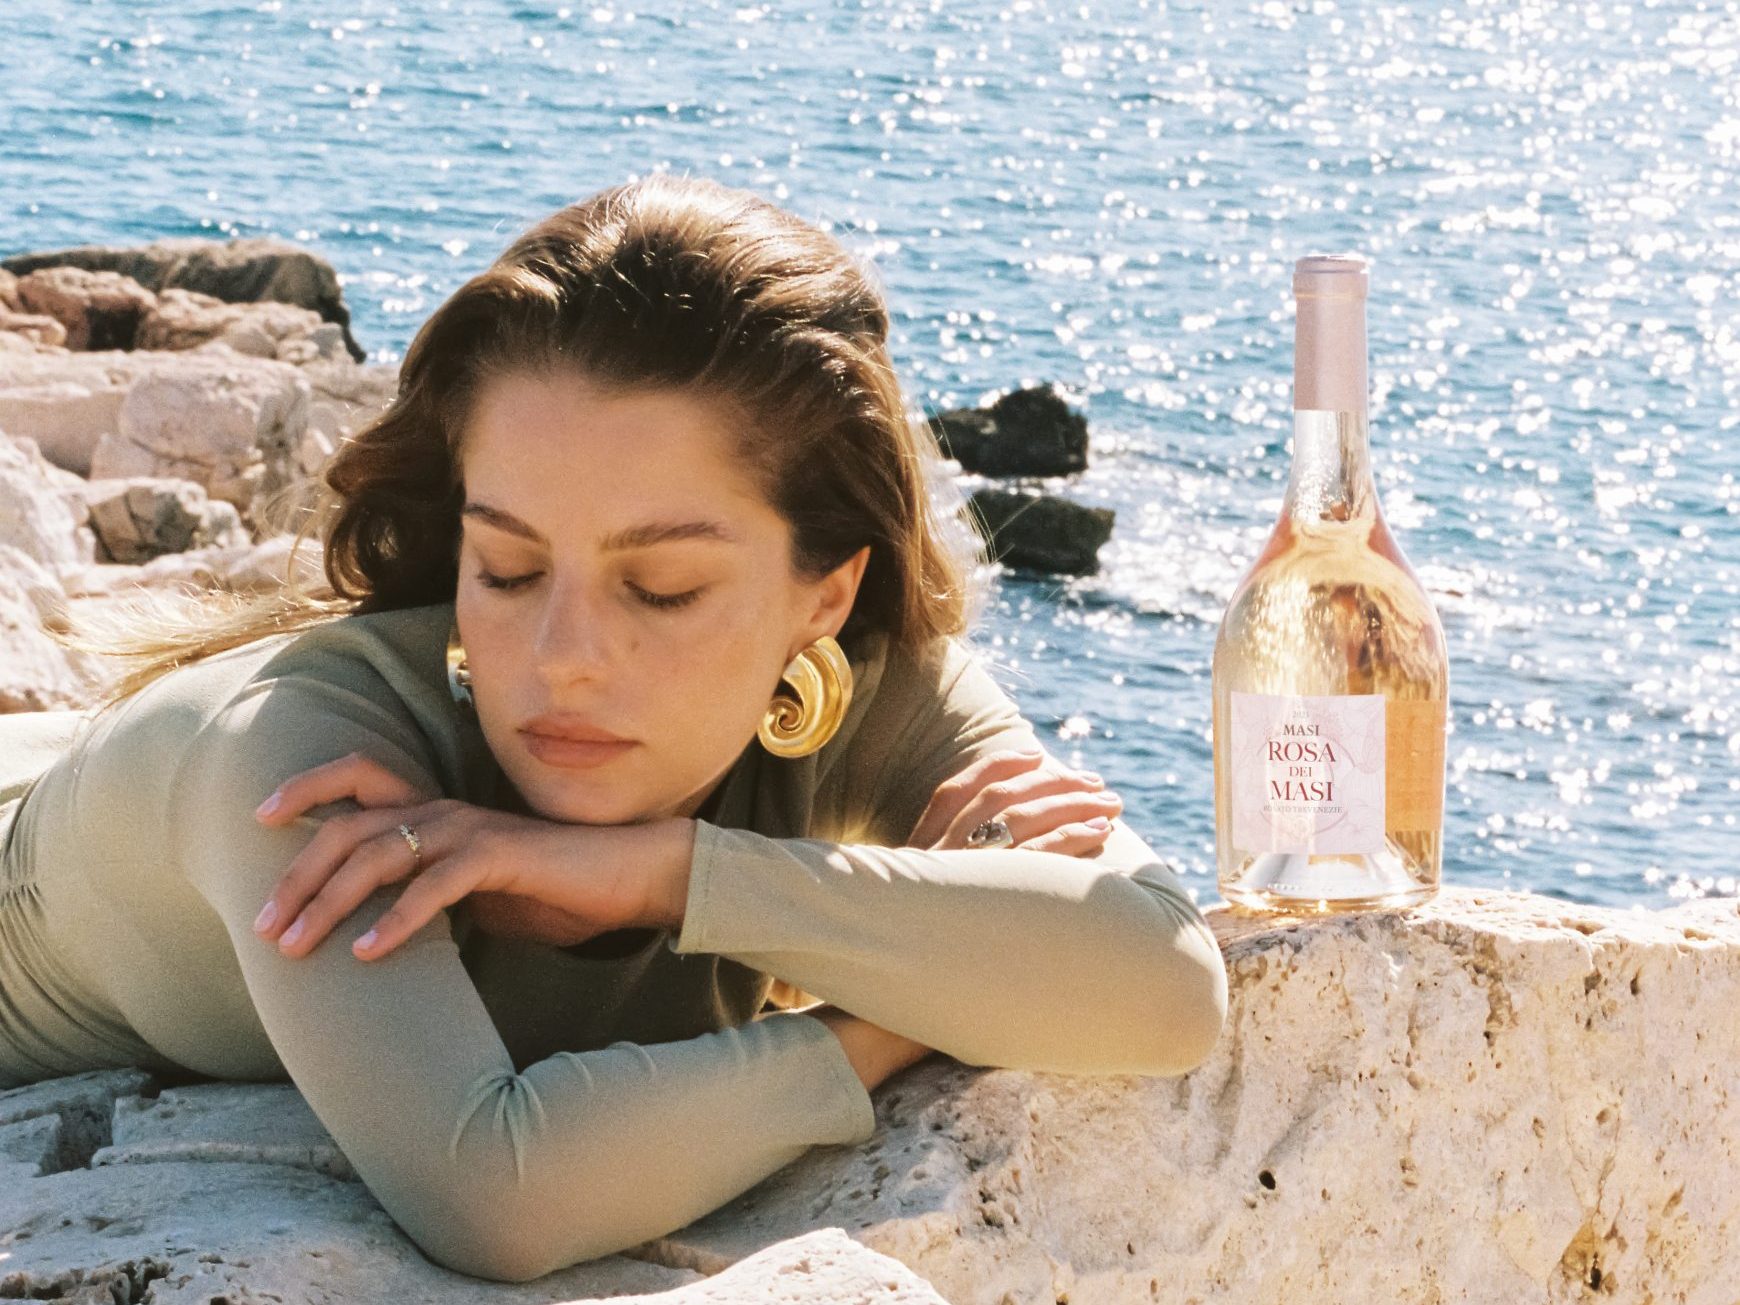 Una mujer con un top verde descansa sobre unas rocas blancas junto al mar. Una botella de Rosa dei Masi está colocada sobre las rocas junto a ella.